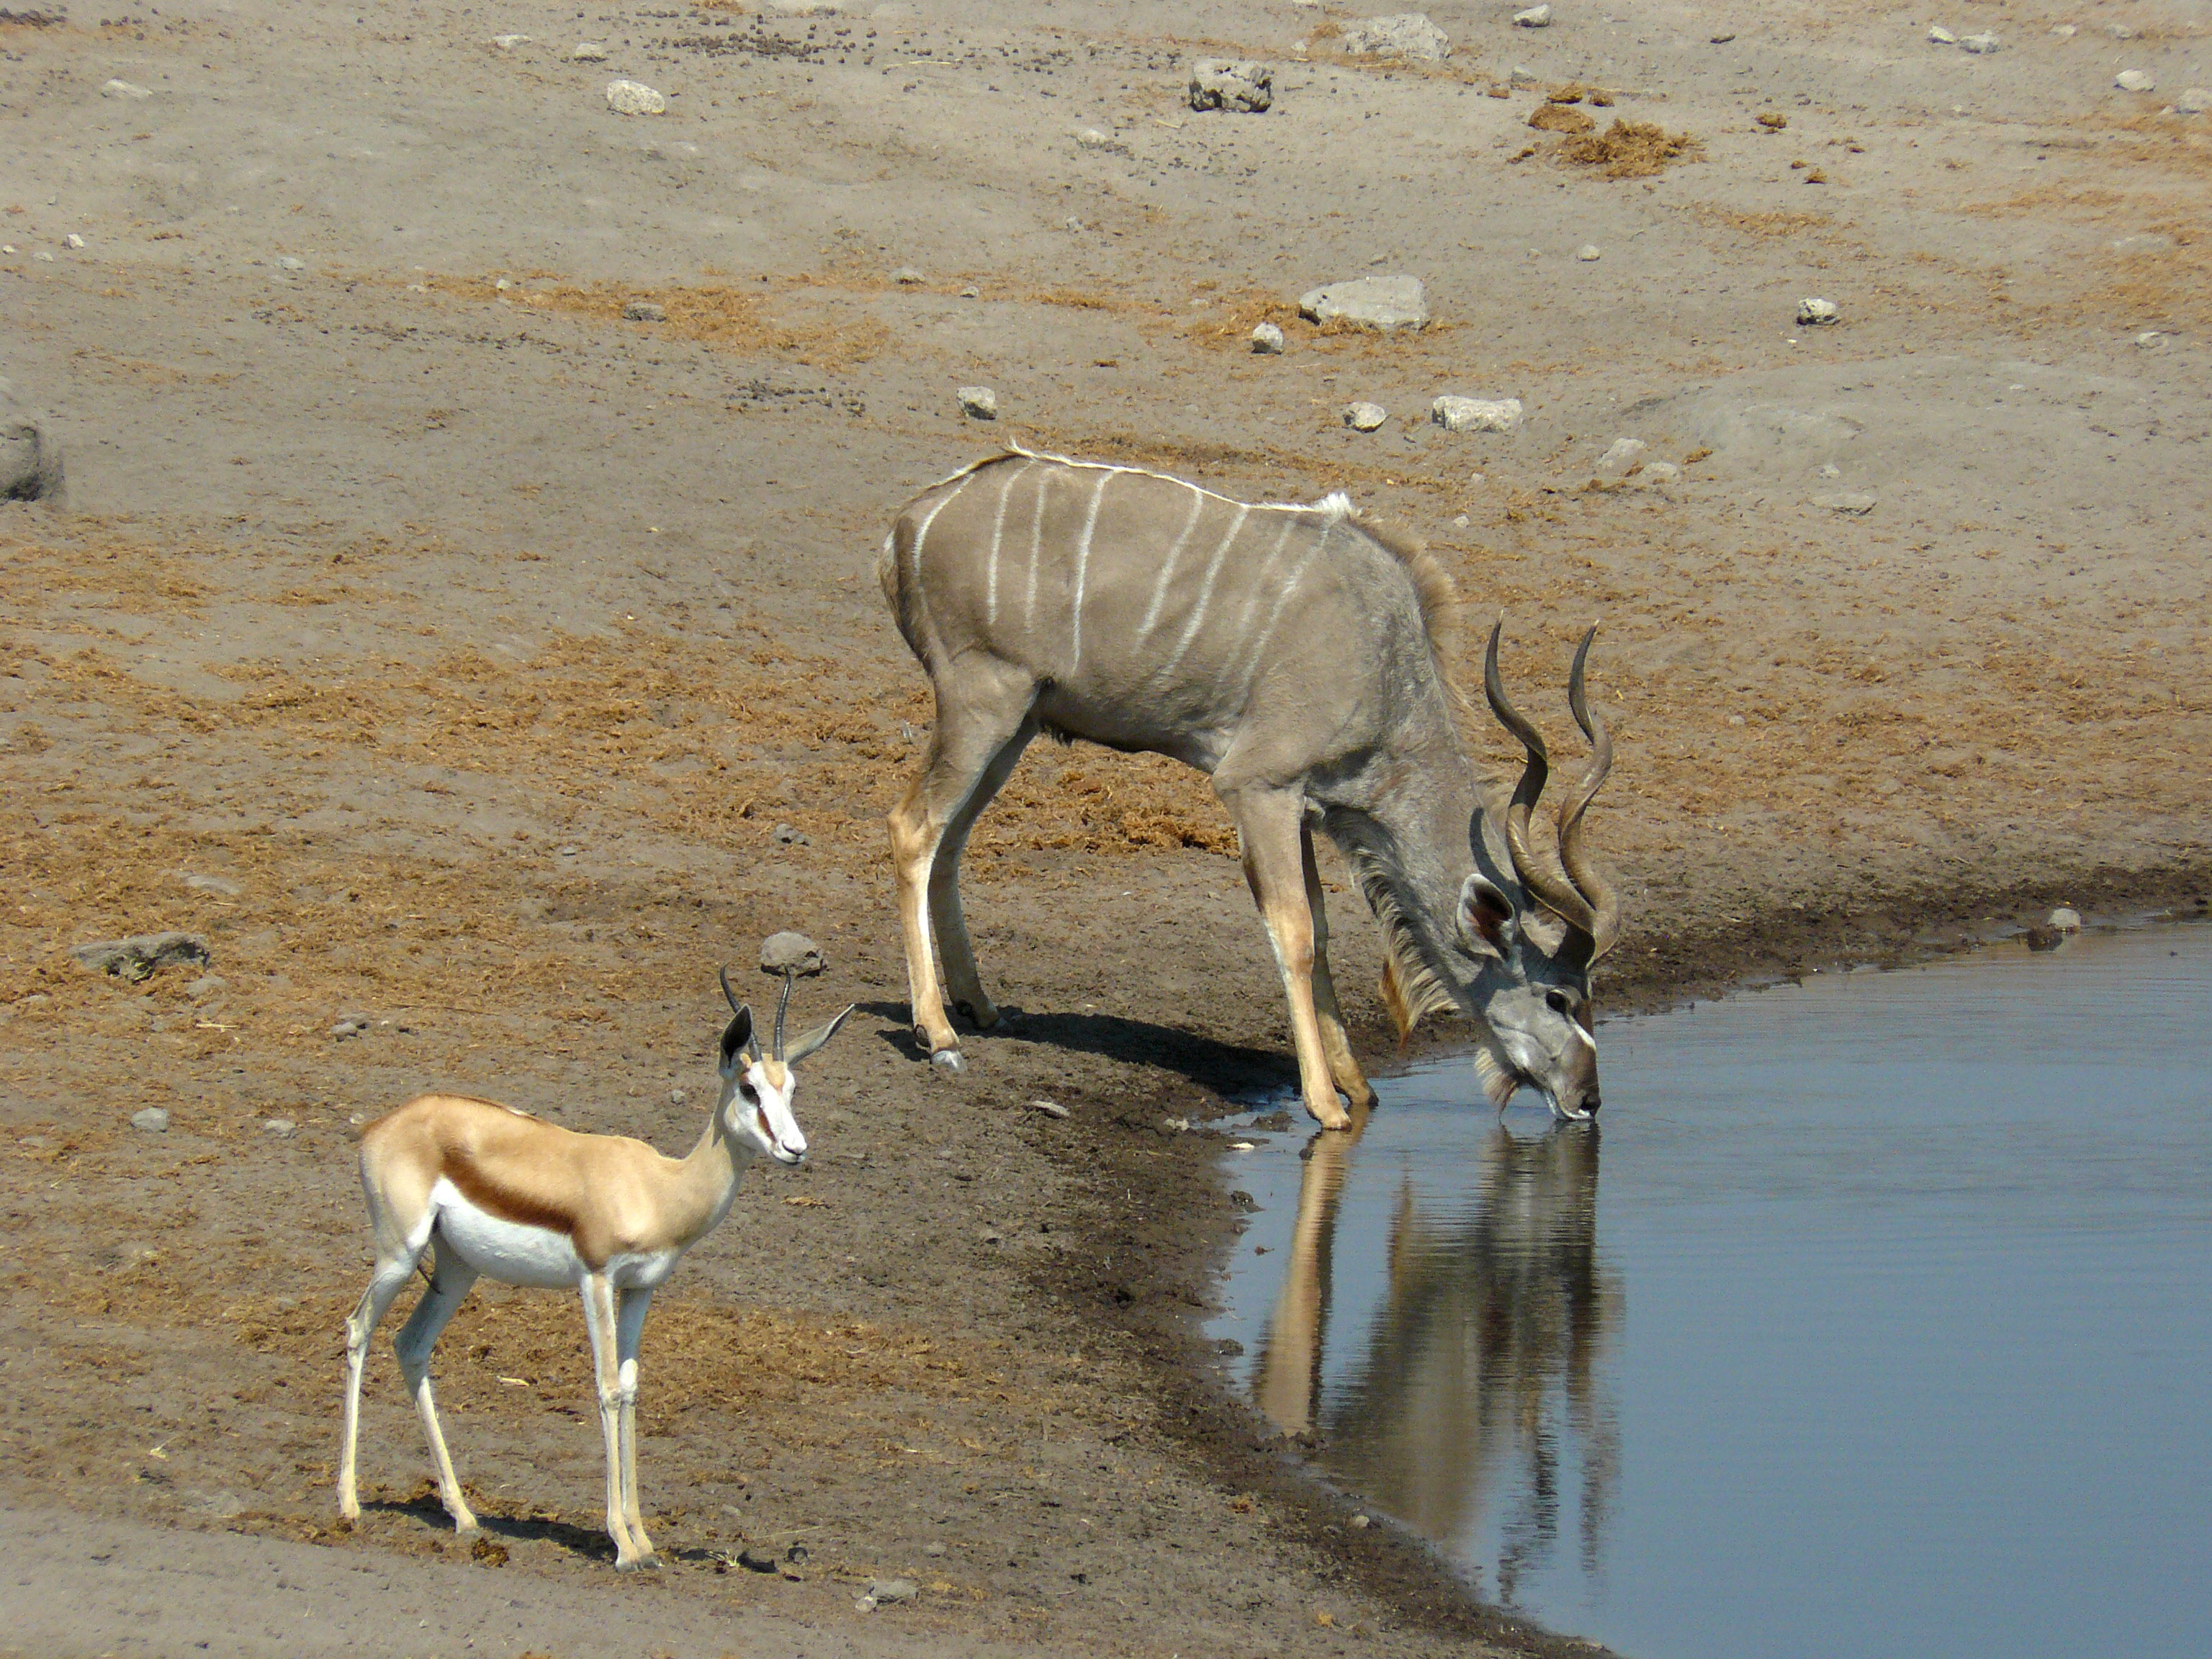 Greater Kudu and Springbok, Etosha National Park, Namibia